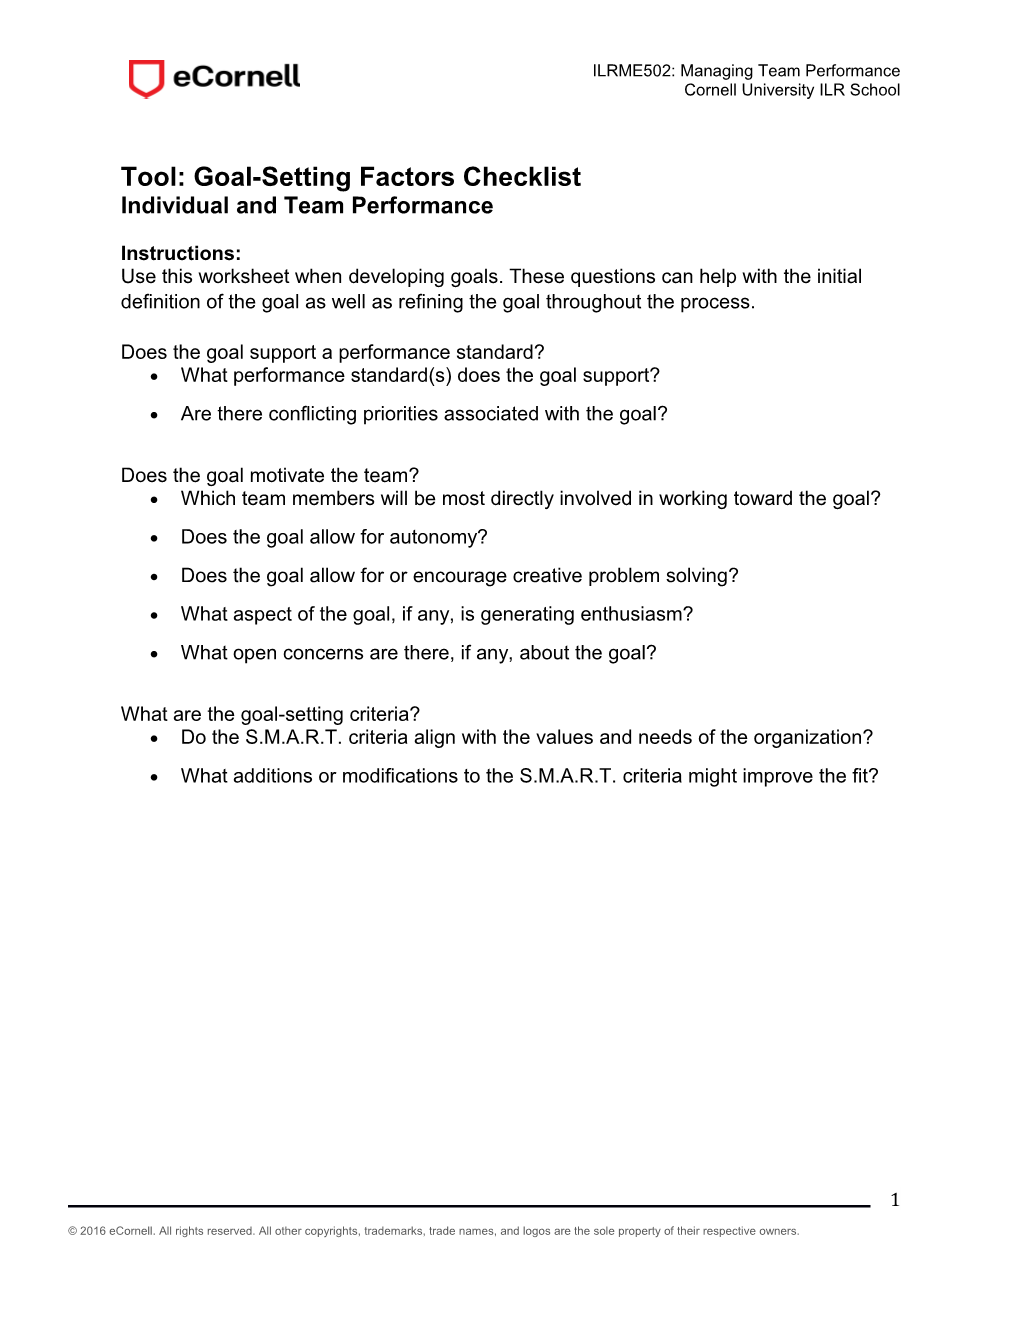 Tool: Goal-Setting Factors Checklist